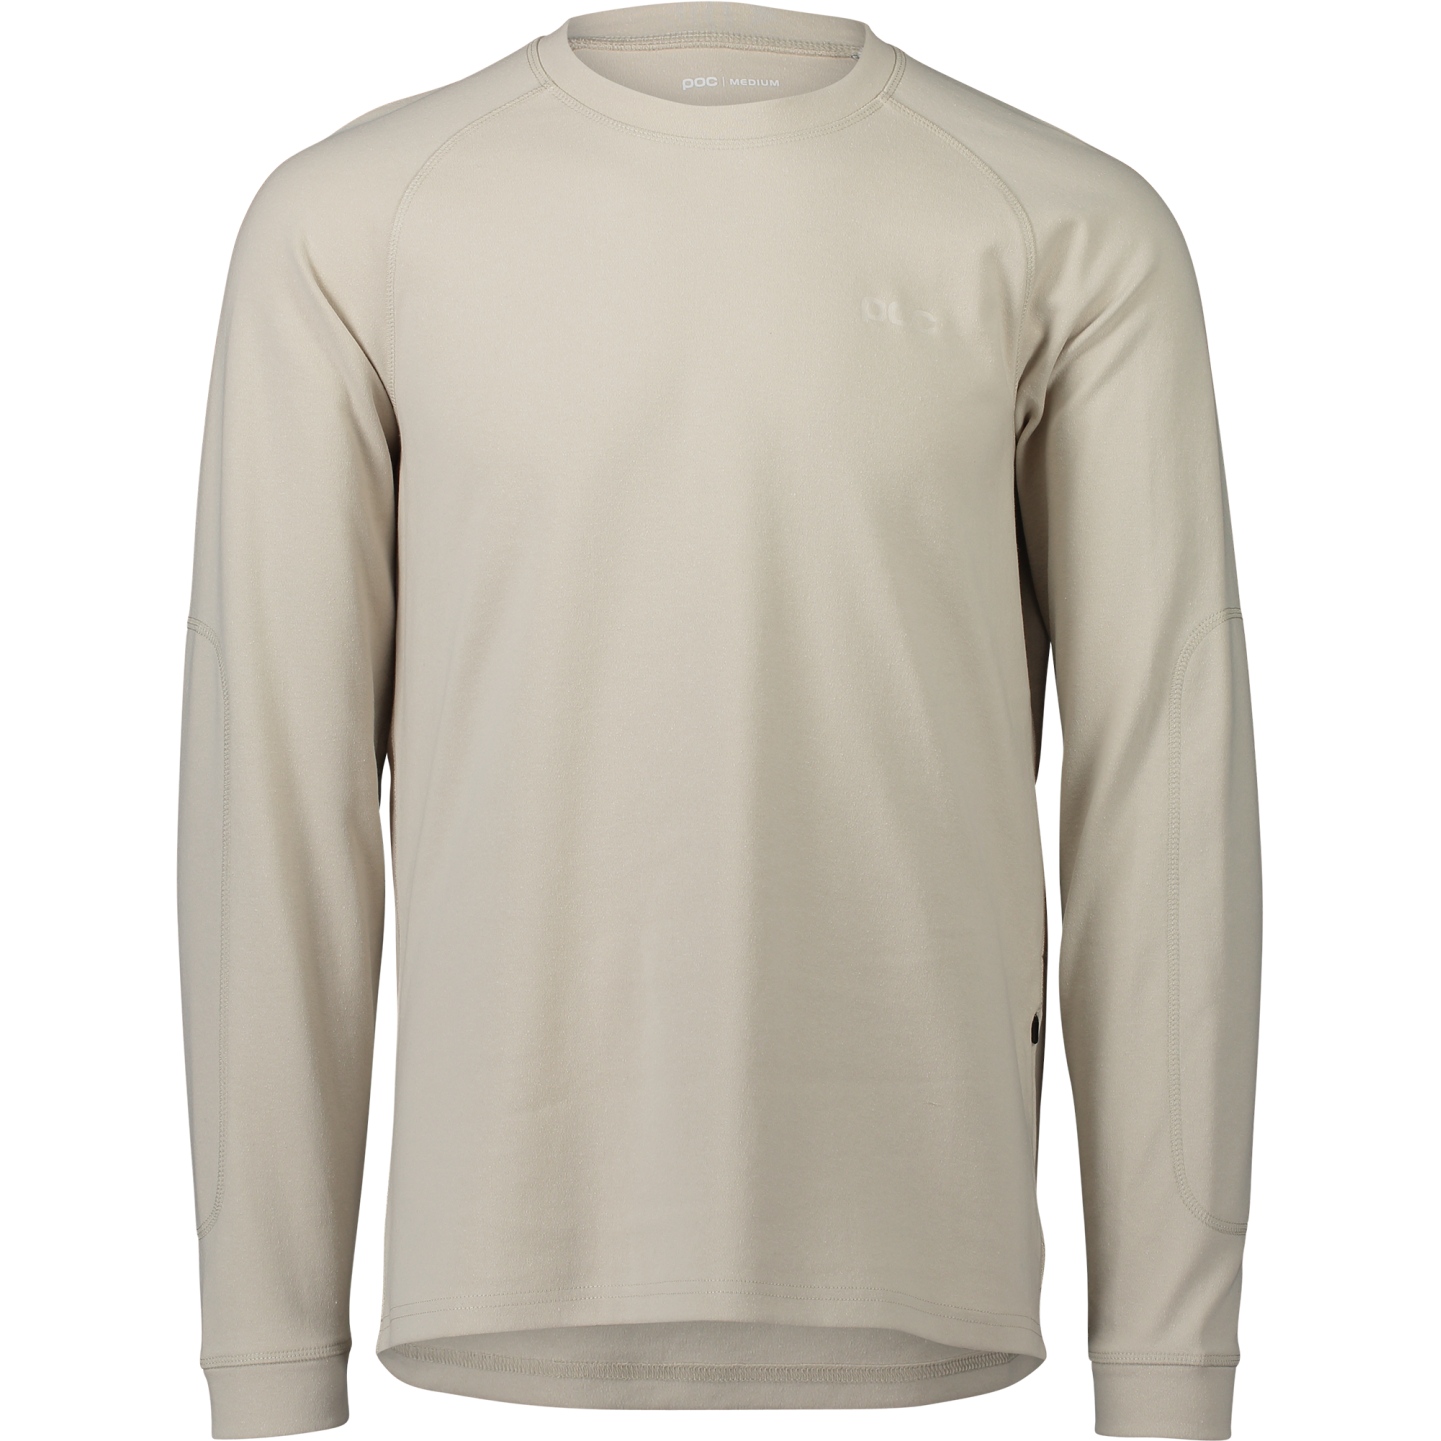 Produktbild von POC Poise Crew Neck Langarm-Shirt - 1814 light sandstone beige